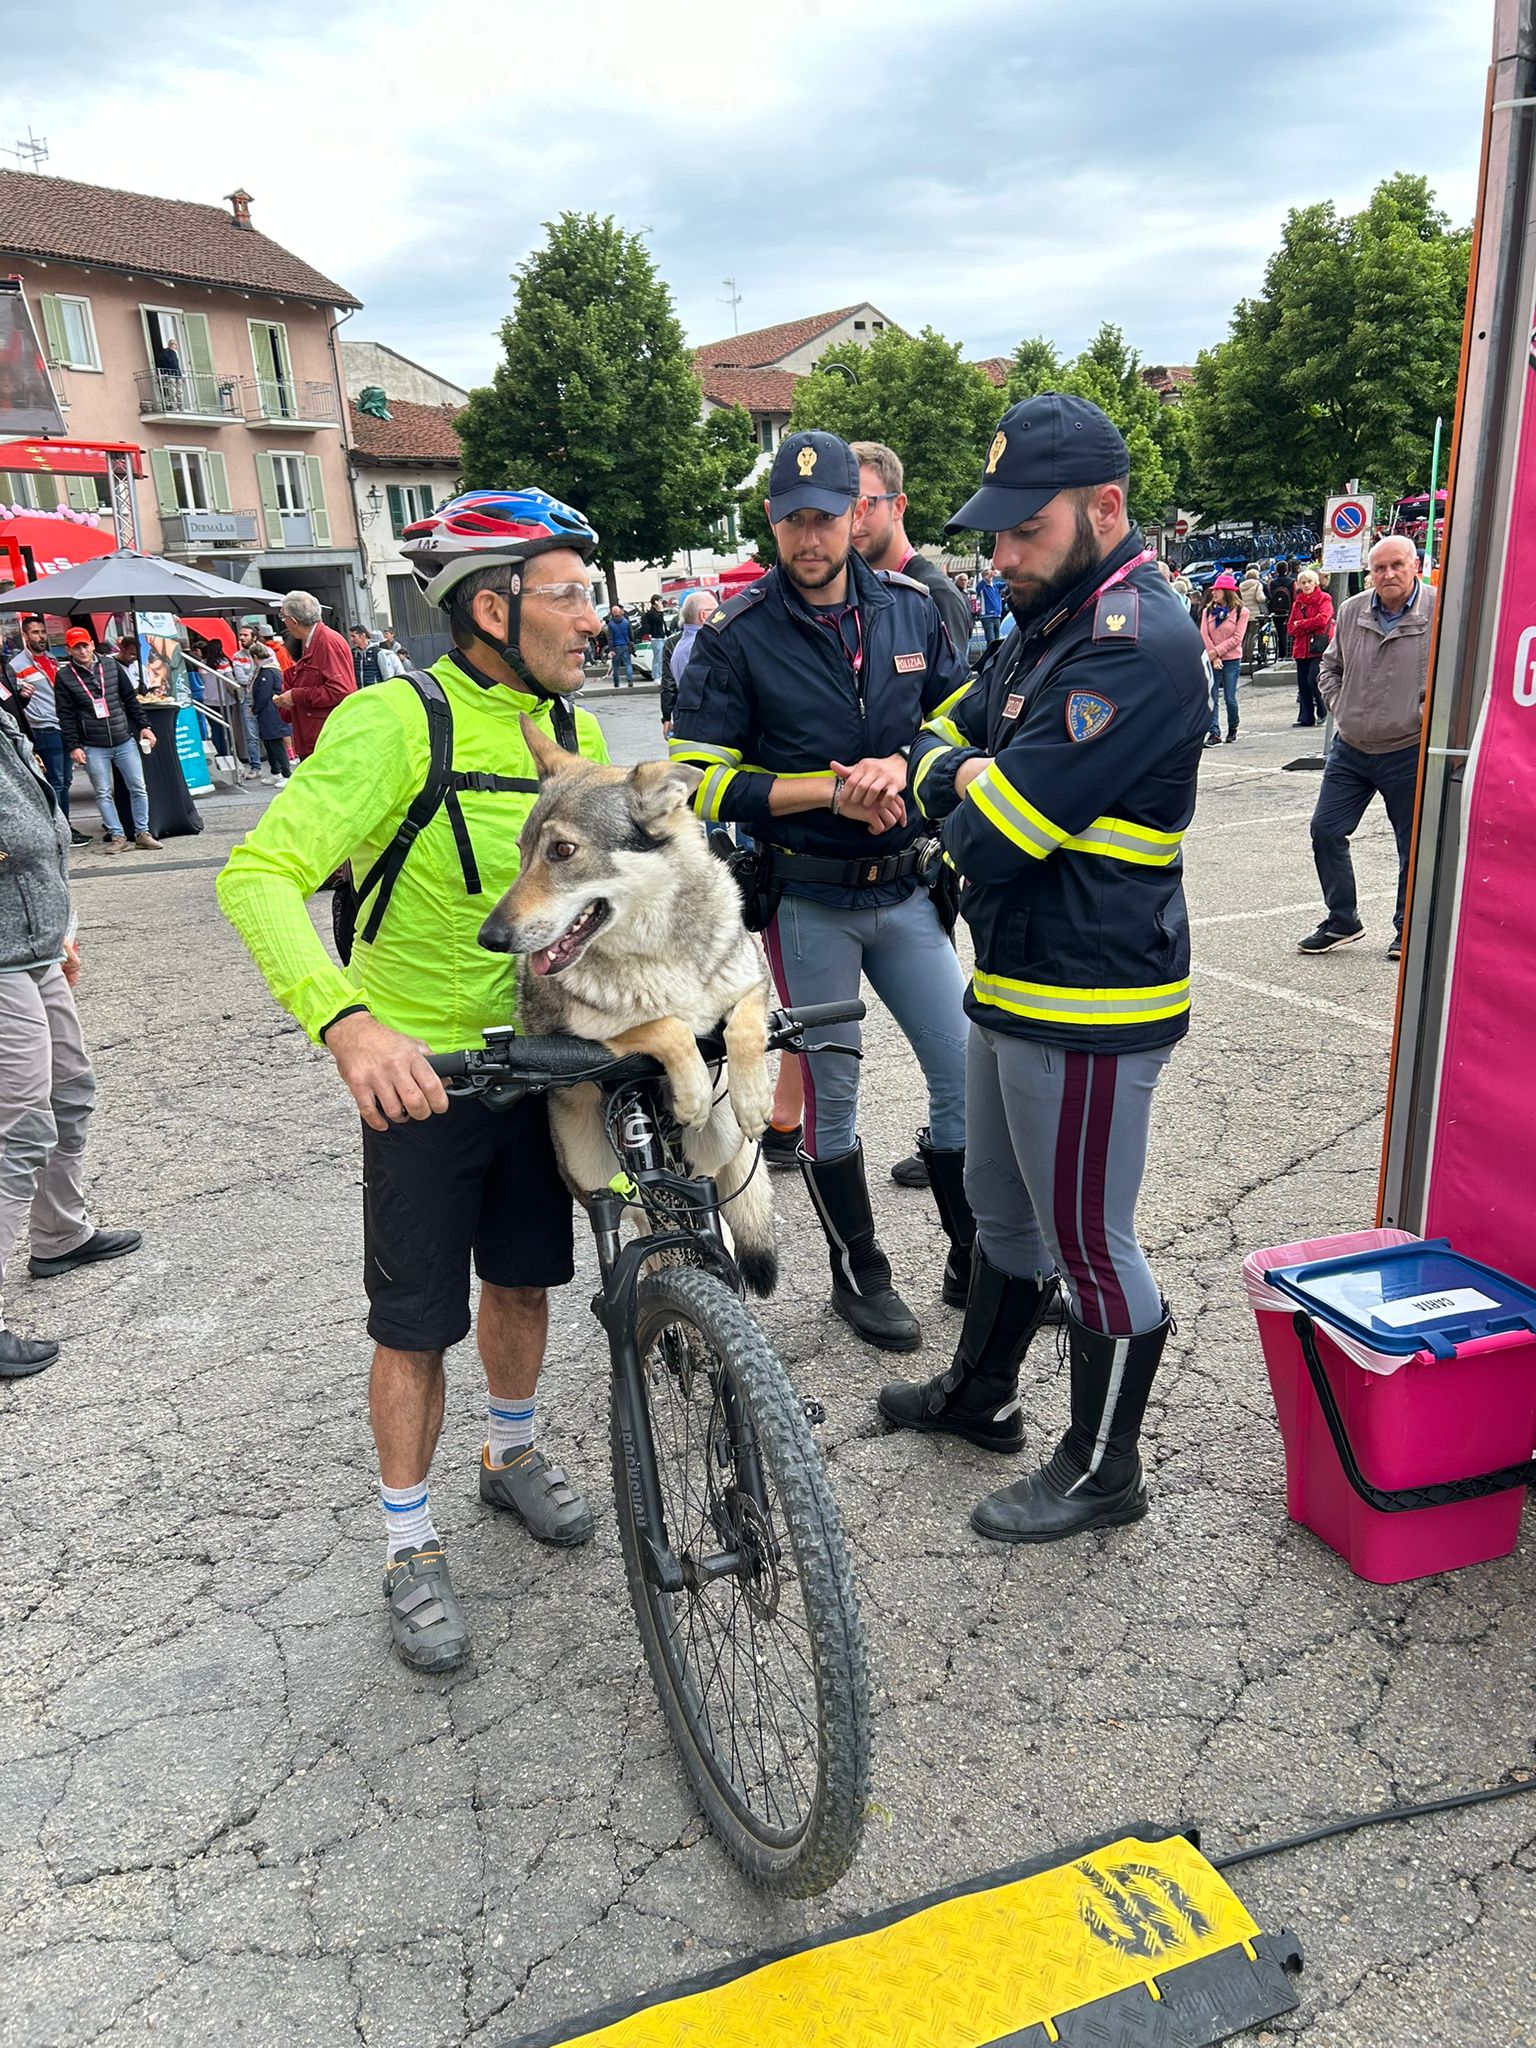 La passione per la bicicletta come mezzo di trasporto anche per gli animali: a Bra (CN), per vedere i campioni su due ruote, un tifoso trasporta il suo lupo cecoslovacco in bici davanti allo sguardo attonito dei poliziotti della Stradale